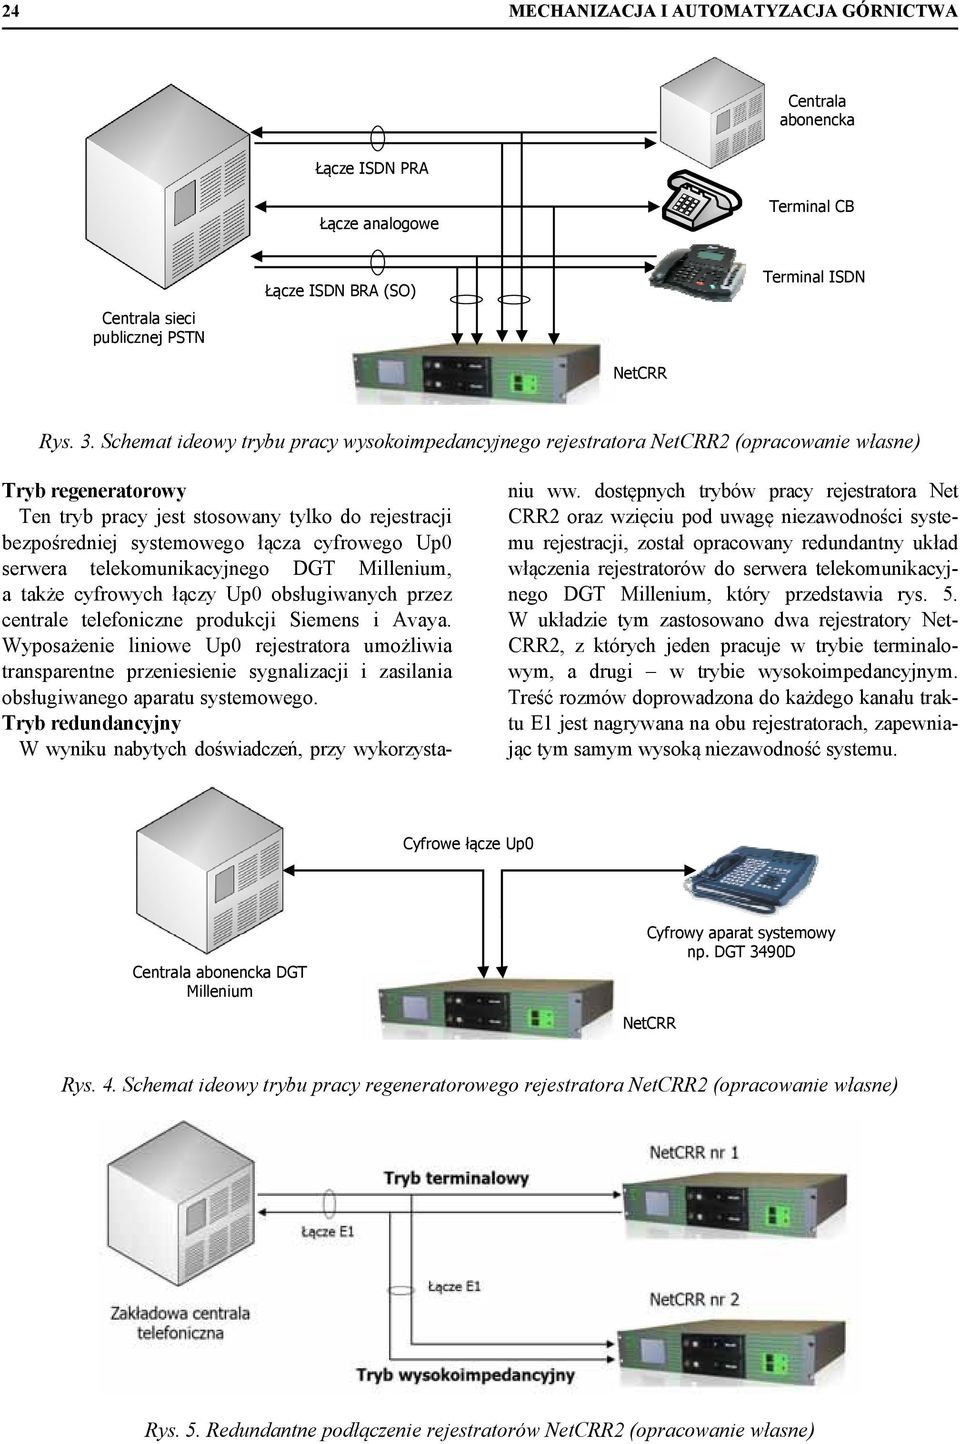 cyfrowego Up0 serwera telekomunikacyjnego DGT Millenium, a także cyfrowych łączy Up0 obsługiwanych przez centrale telefoniczne produkcji Siemens i Avaya.